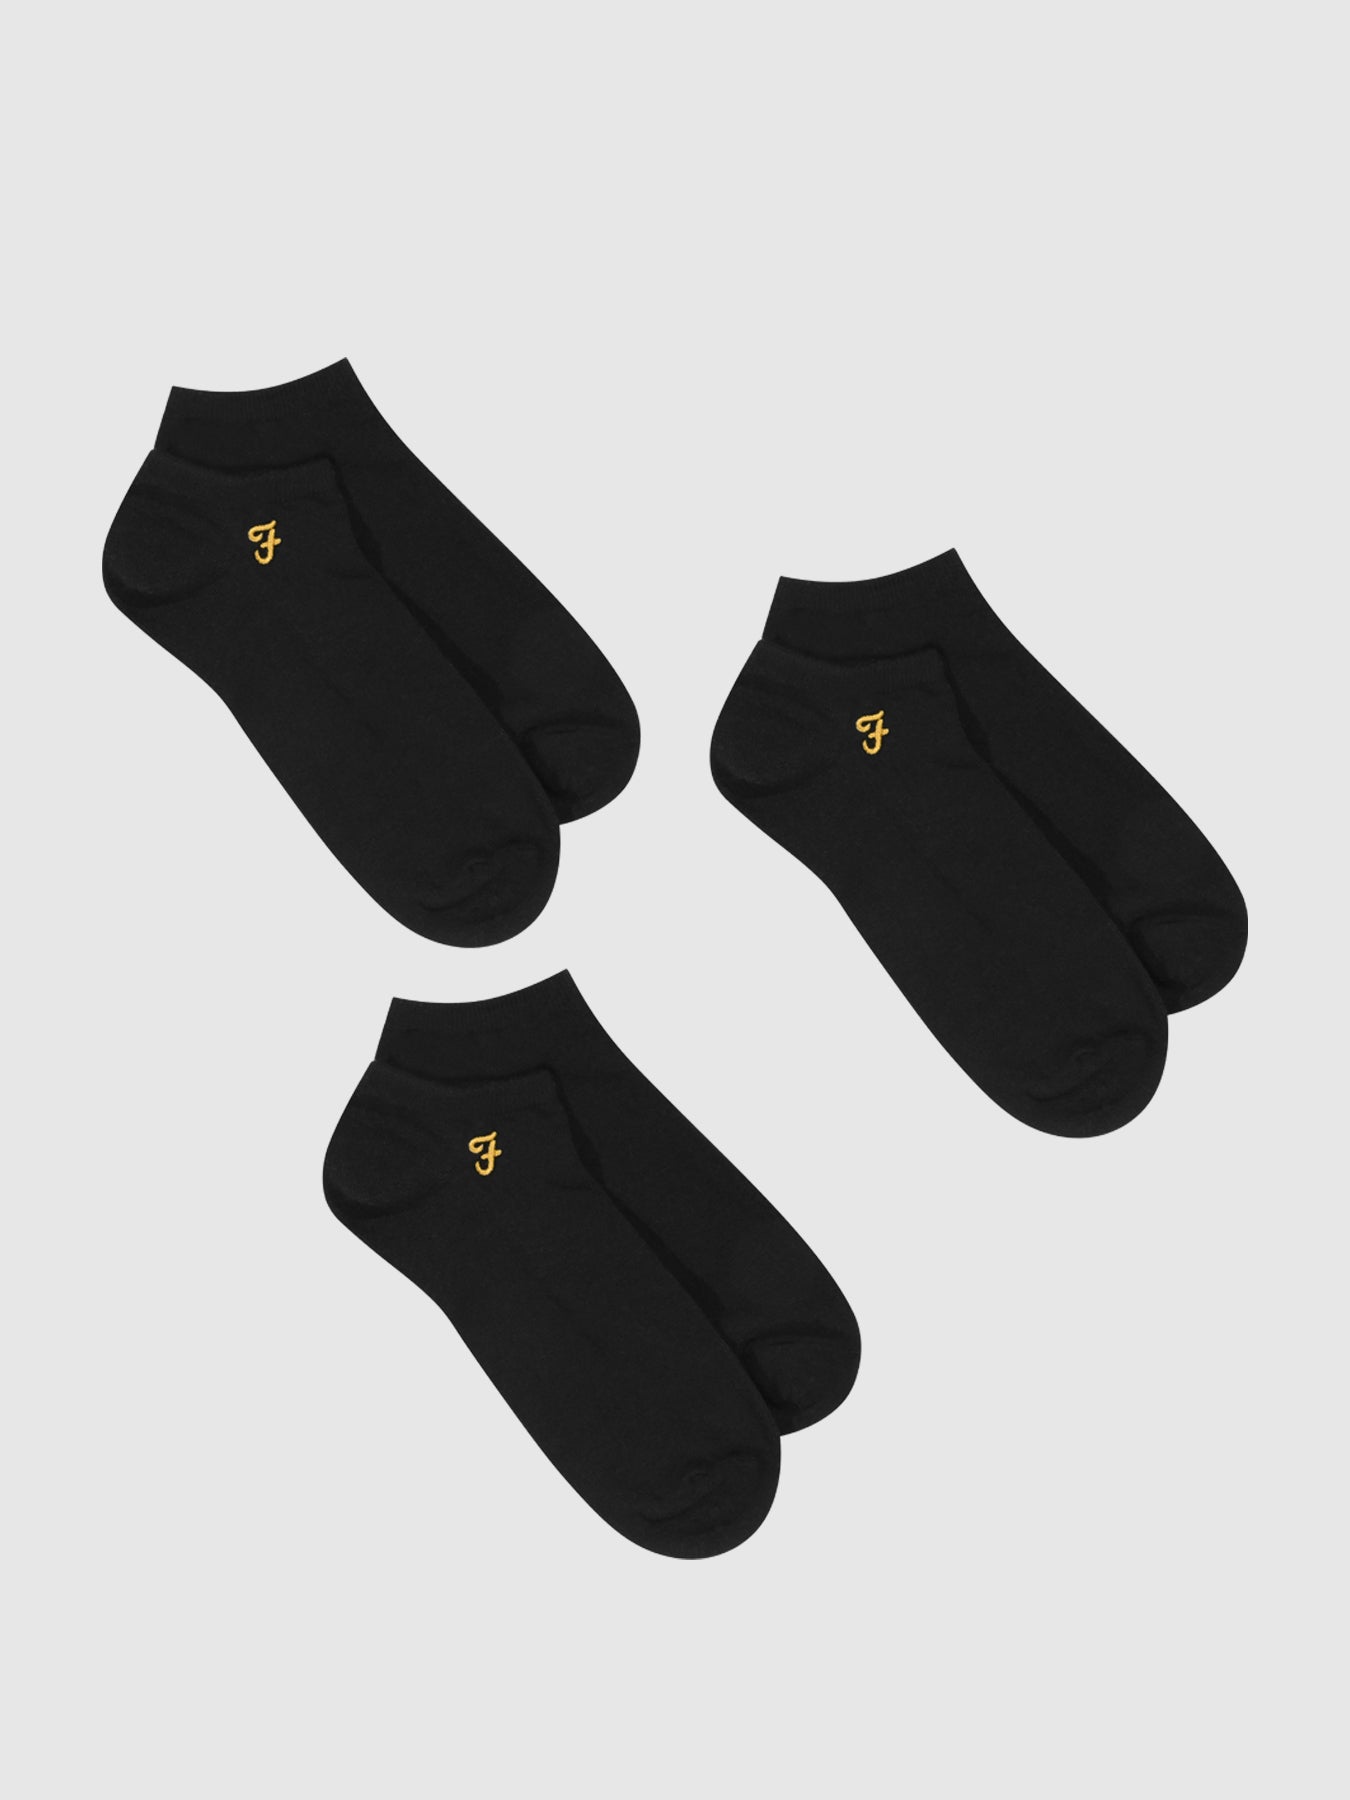 View 3 Pack Lined Machado Socks In Black information